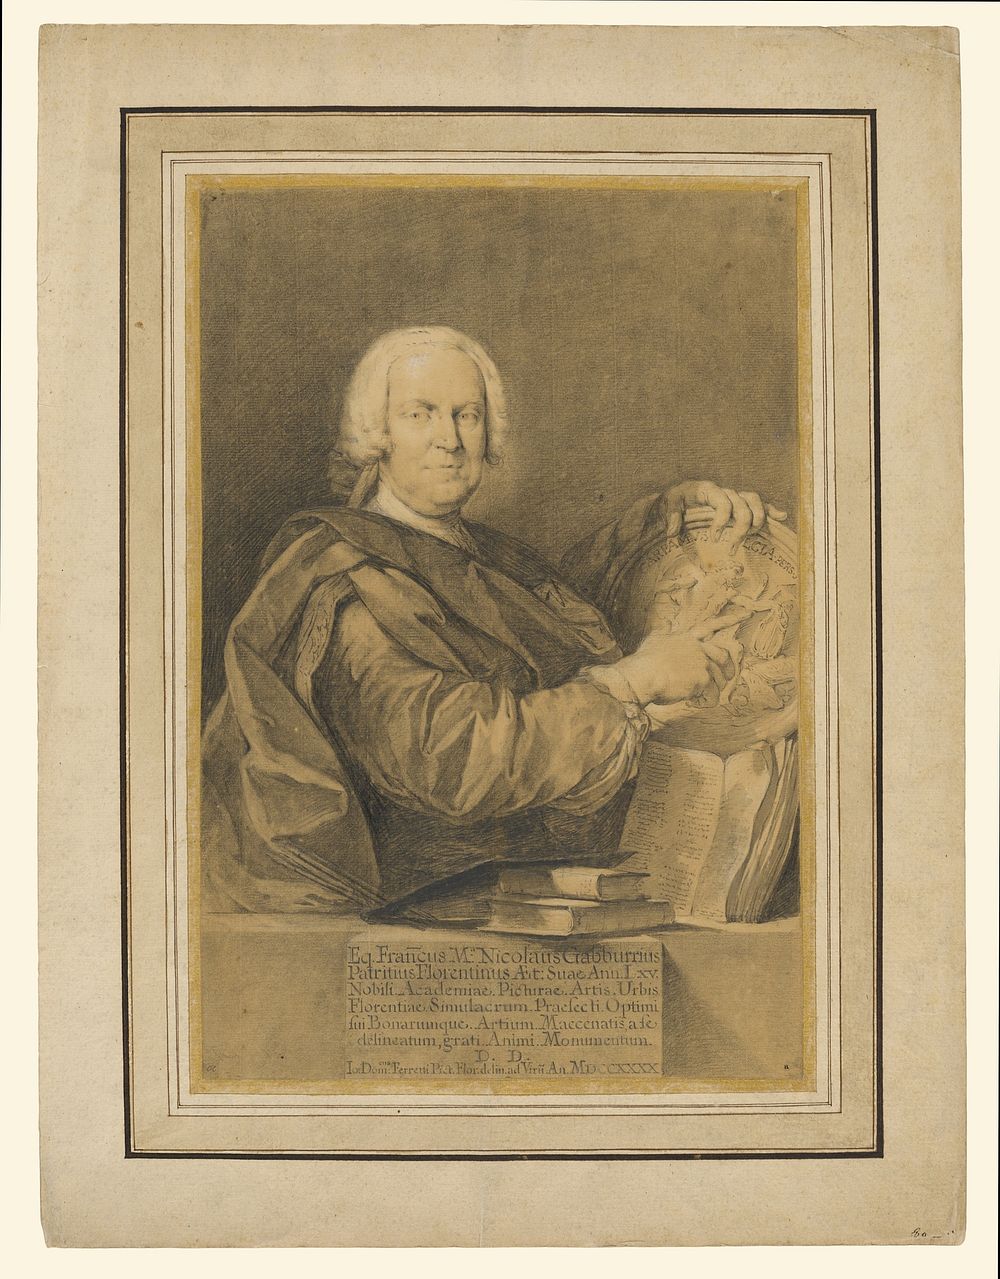 Portrait of Cavaliere Francesco Maria Niccolò Gabburri by Domenico Ferretti